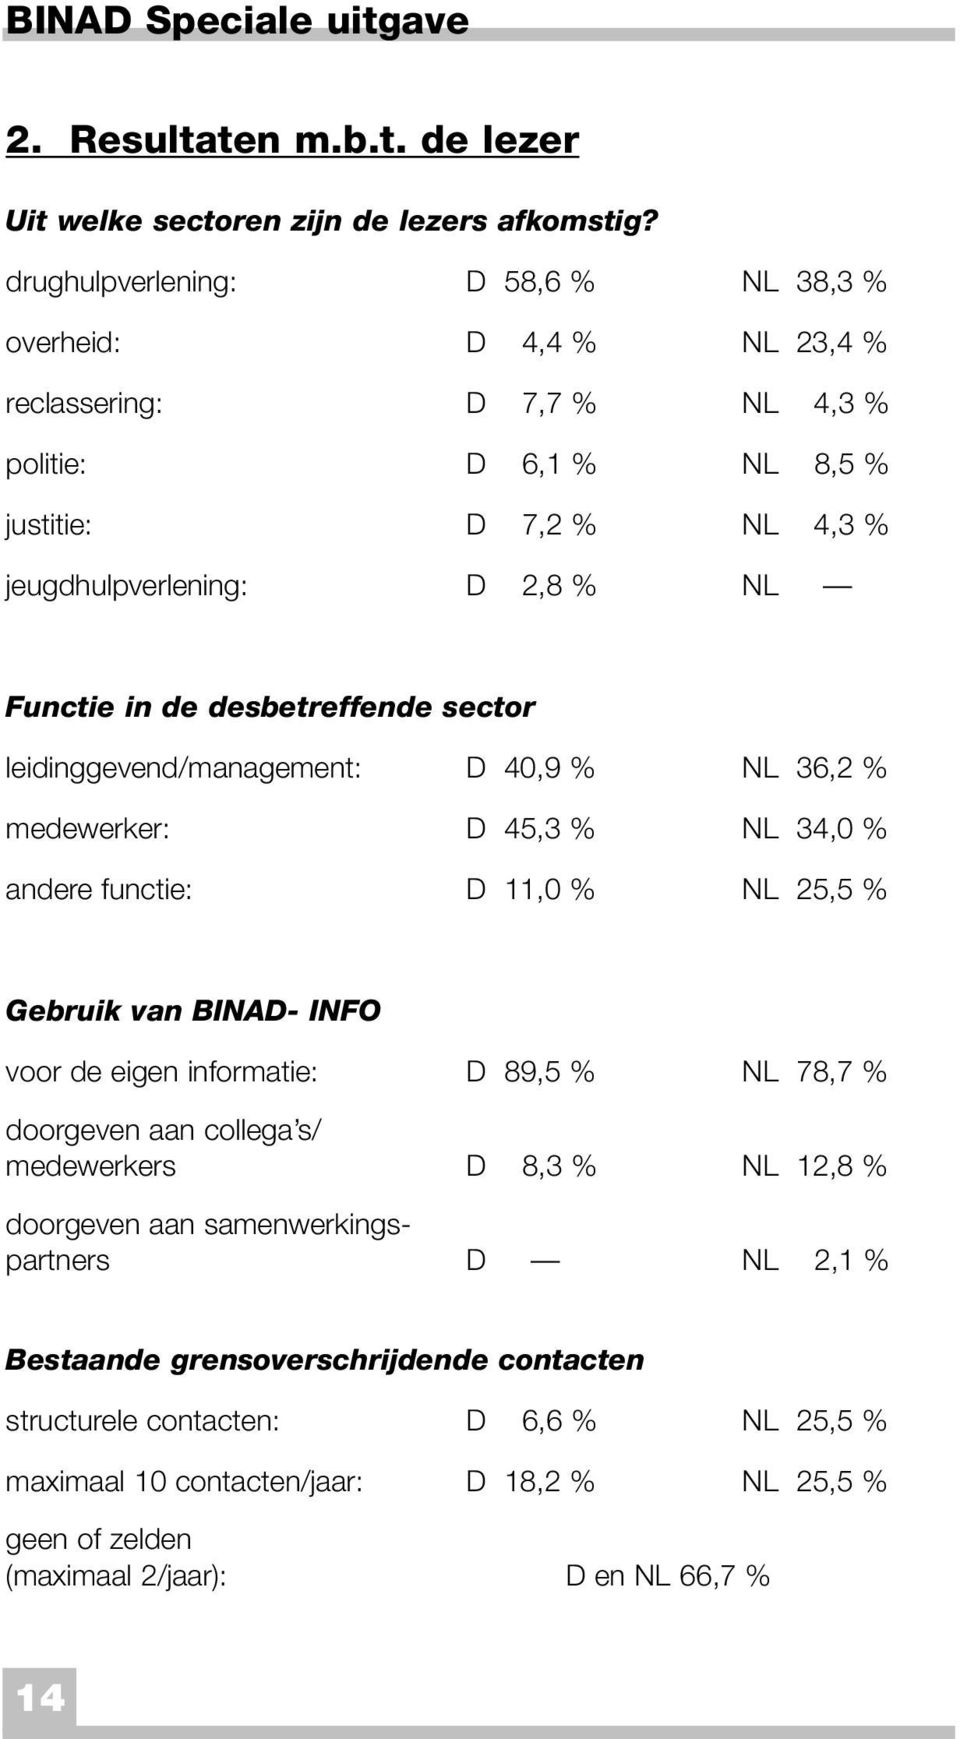 desbetreffende sector leidinggevend/management: D 40,9 % NL 36,2 % medewerker: D 45,3 % NL 34,0 % andere functie: D 11,0 % NL 25,5 % Gebruik van BINAD- INFO voor de eigen informatie: D 89,5 % NL